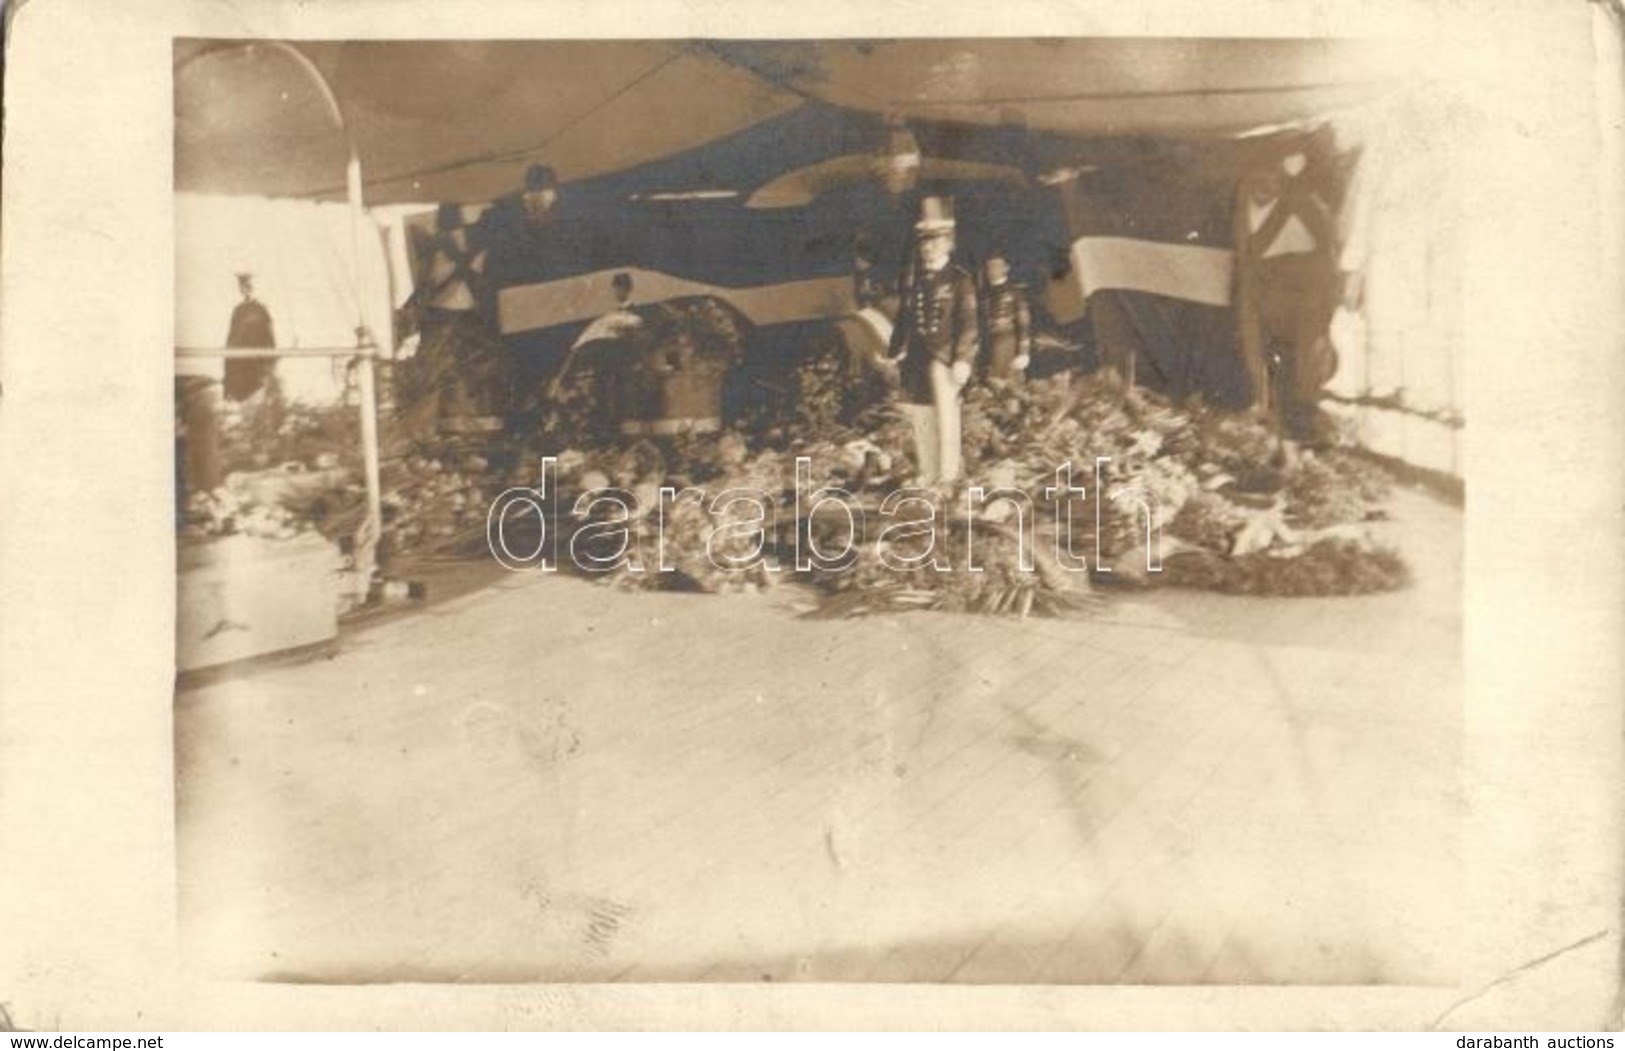 * T2/T3 1914 Temetés Az SMS Admiral Spaun Gyorscirkálón; Osztrák-Magyar Haditengerészet / WWI Funeral At SMS Admiral Spa - Ohne Zuordnung